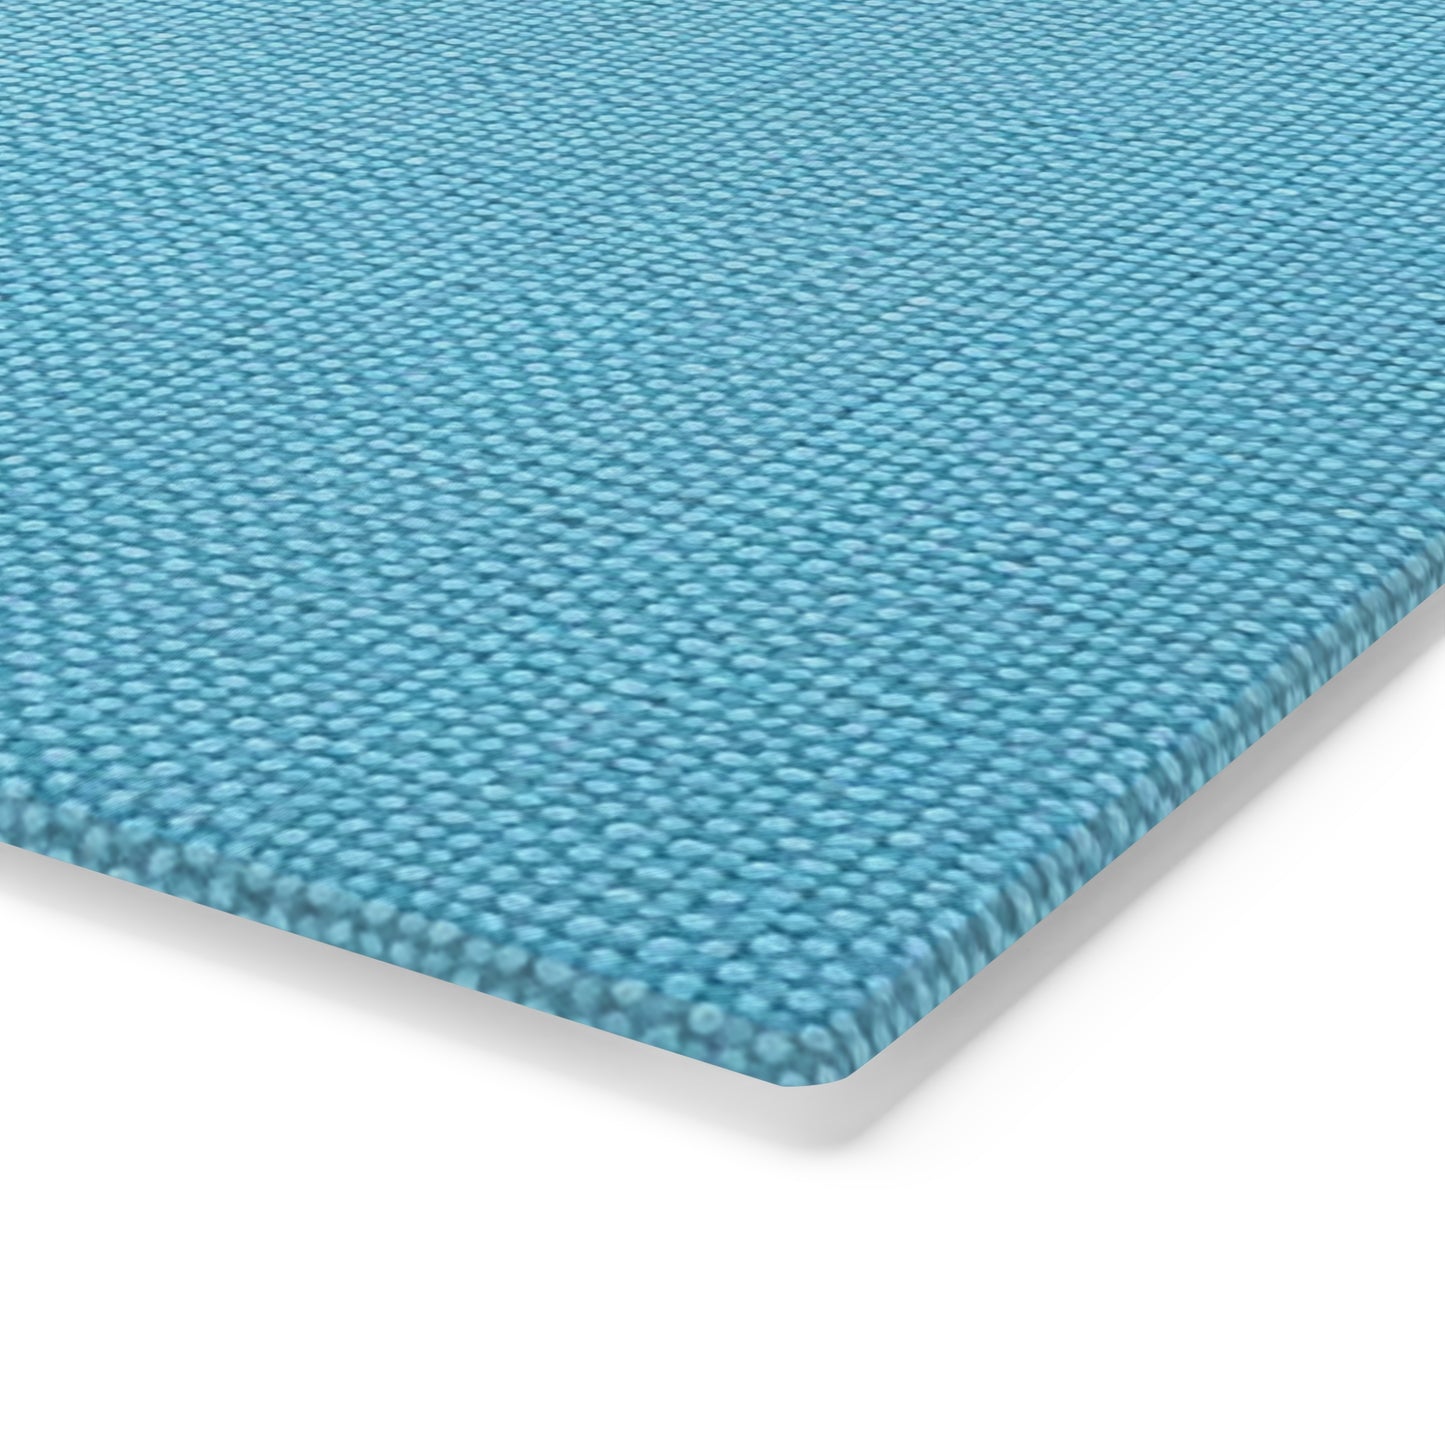 Bright Aqua Teal: Denim-Inspired Refreshing Blue Summer Fabric - Cutting Board